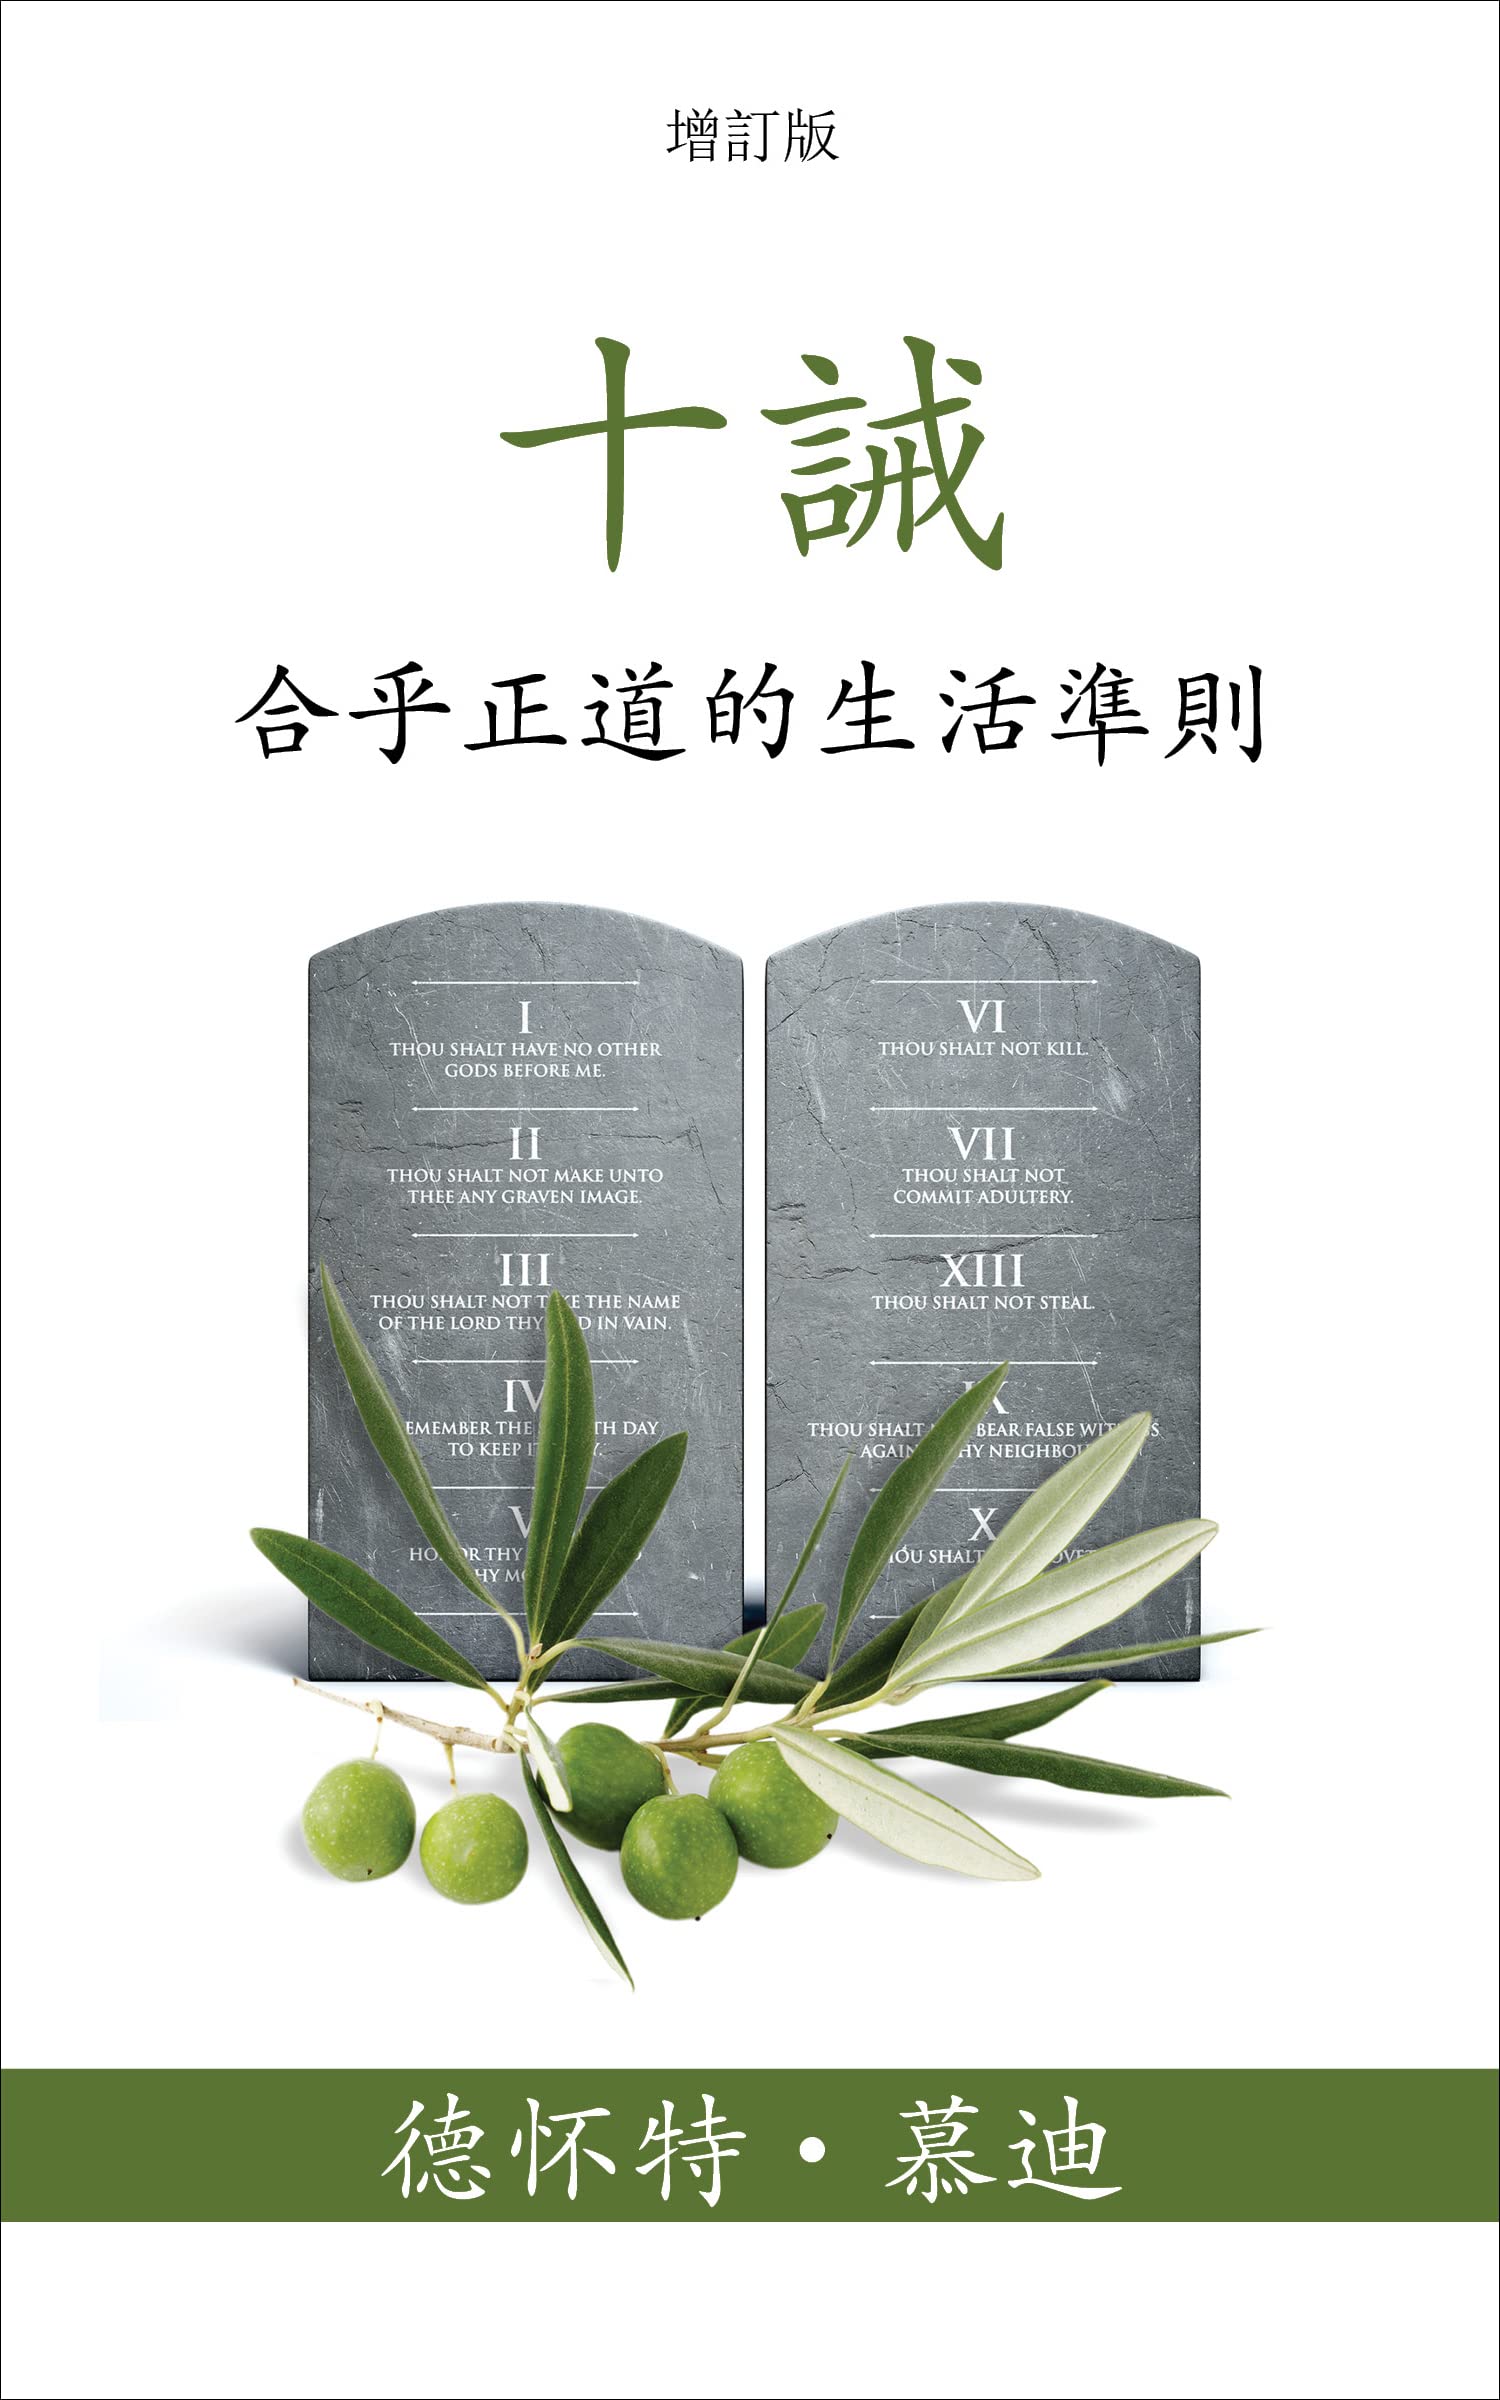 十誡 (The Ten Commandments) (Traditional): 合乎正道的生活準則 (Reasonable Rules for Life) (Traditional Chinese Edition)